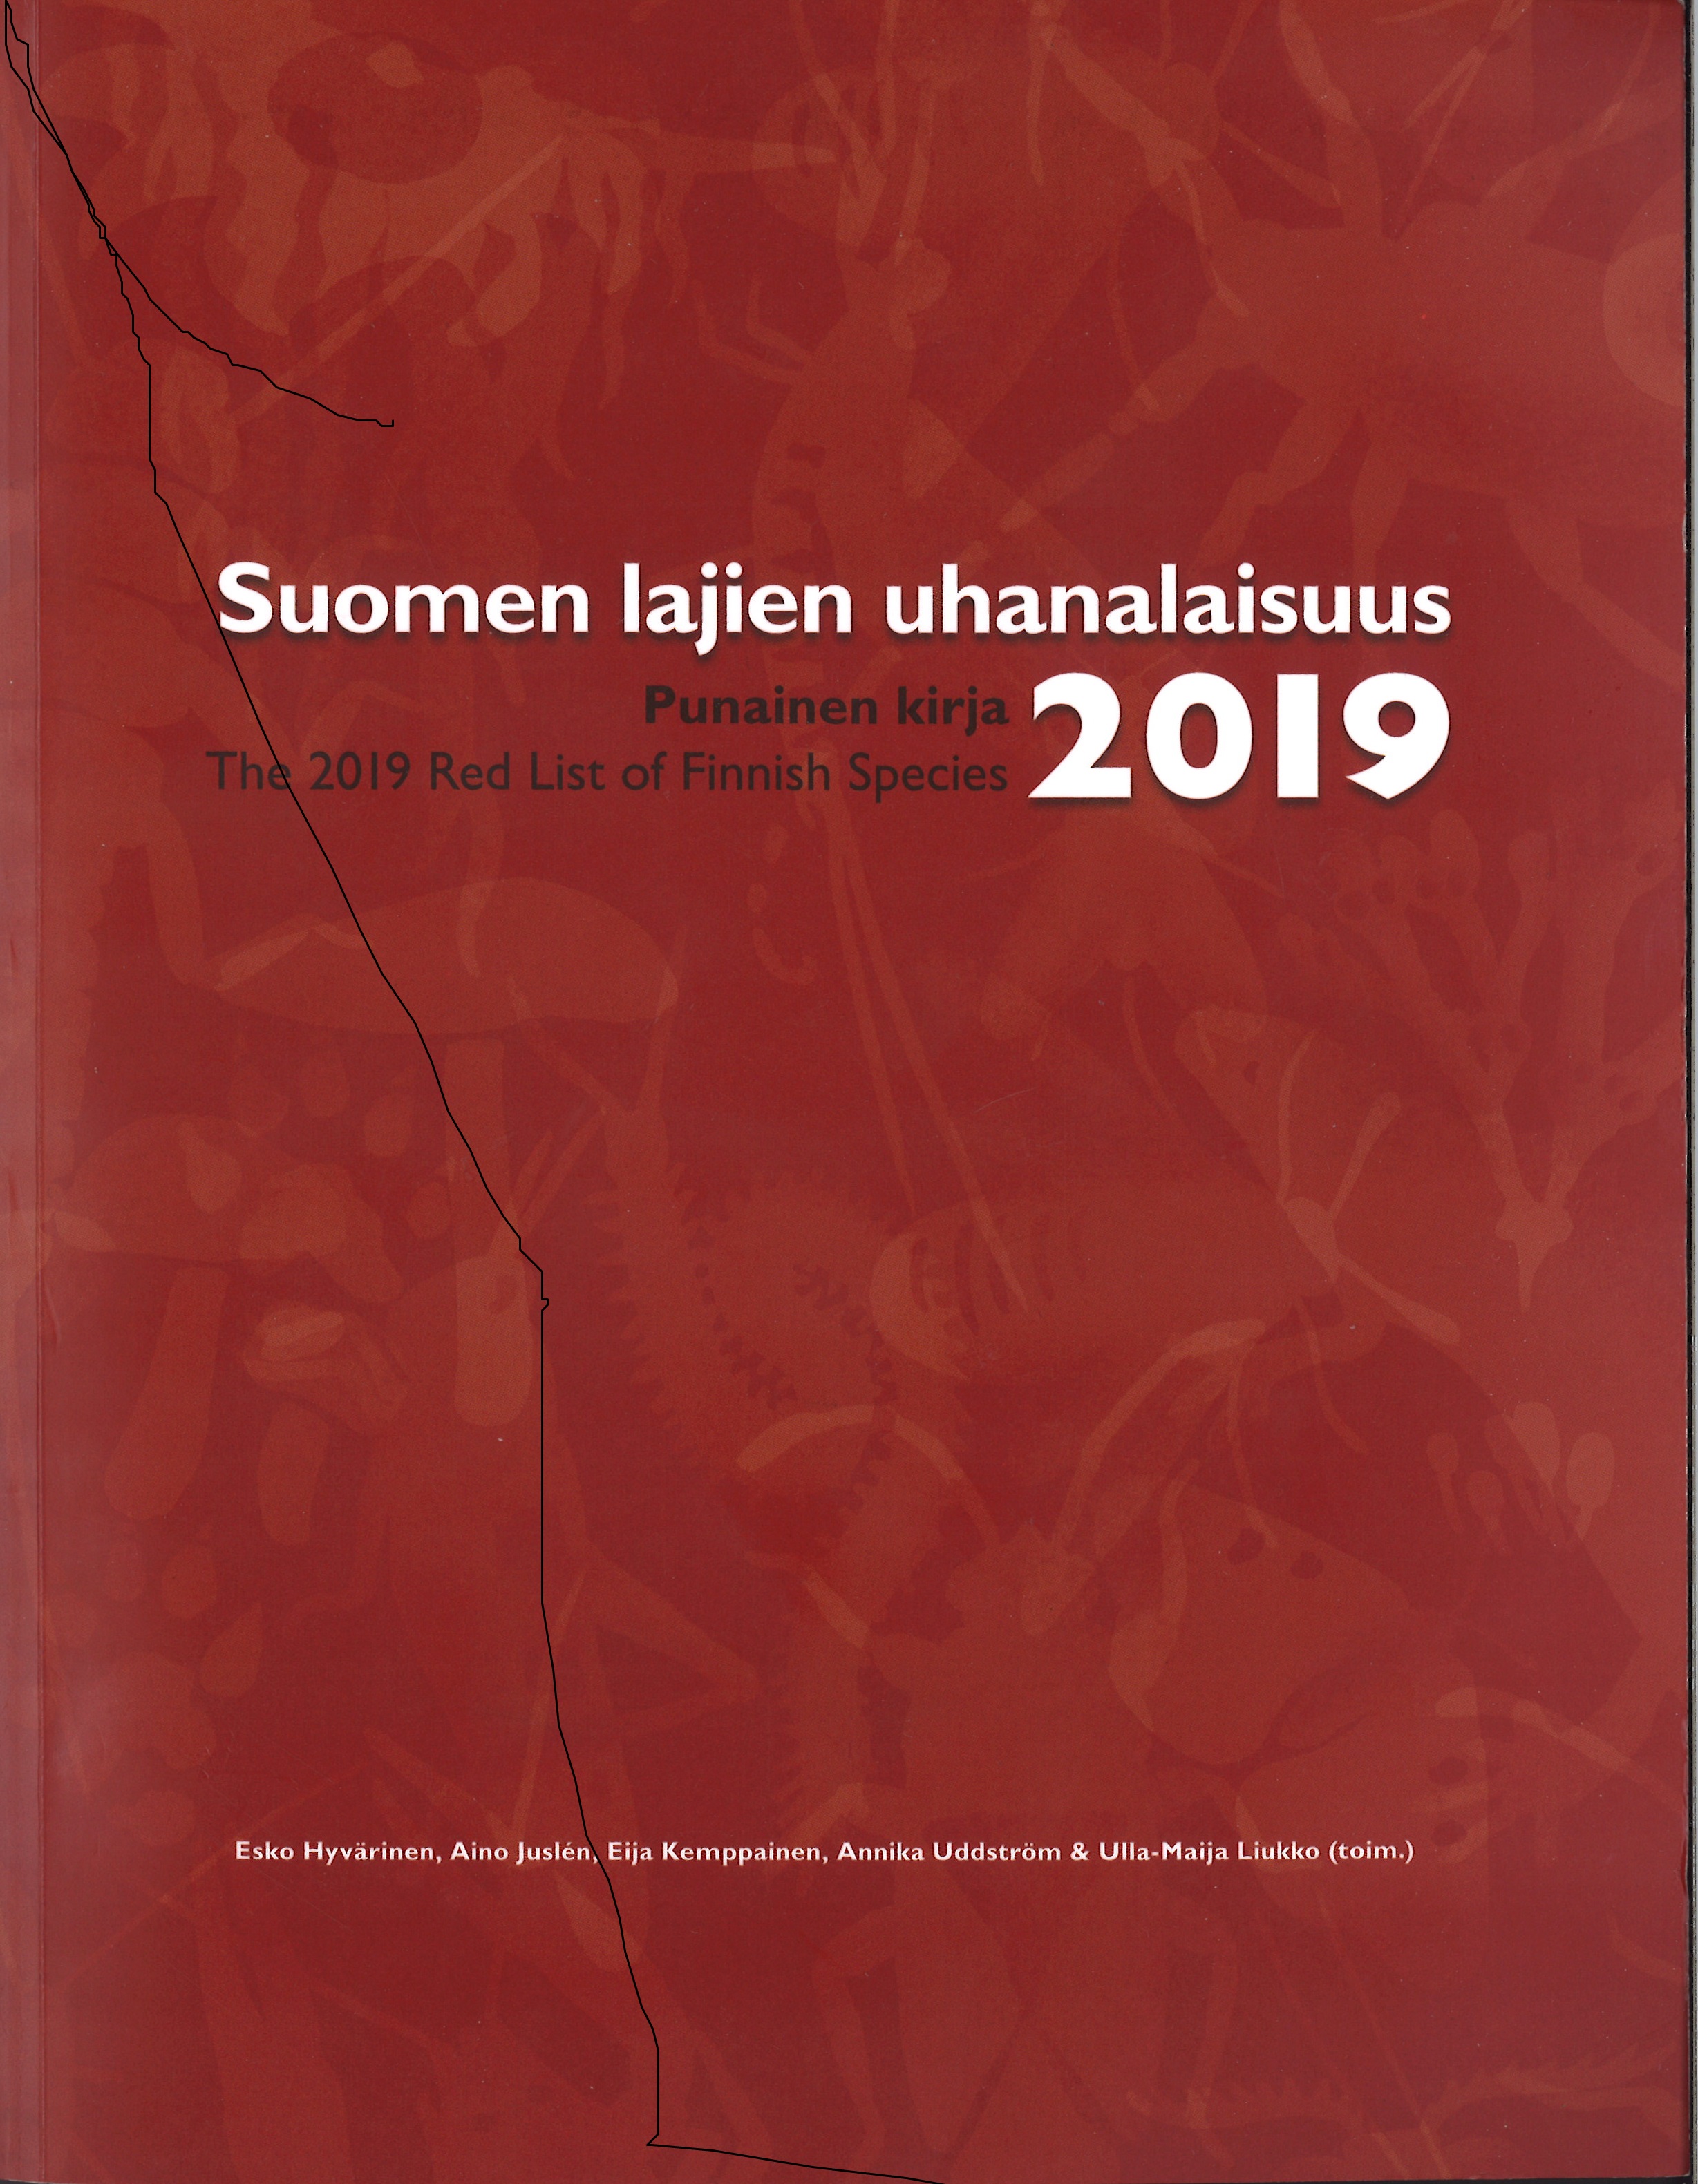 Suomen lajien uhanalaisuus 2019 -raportin kansi.